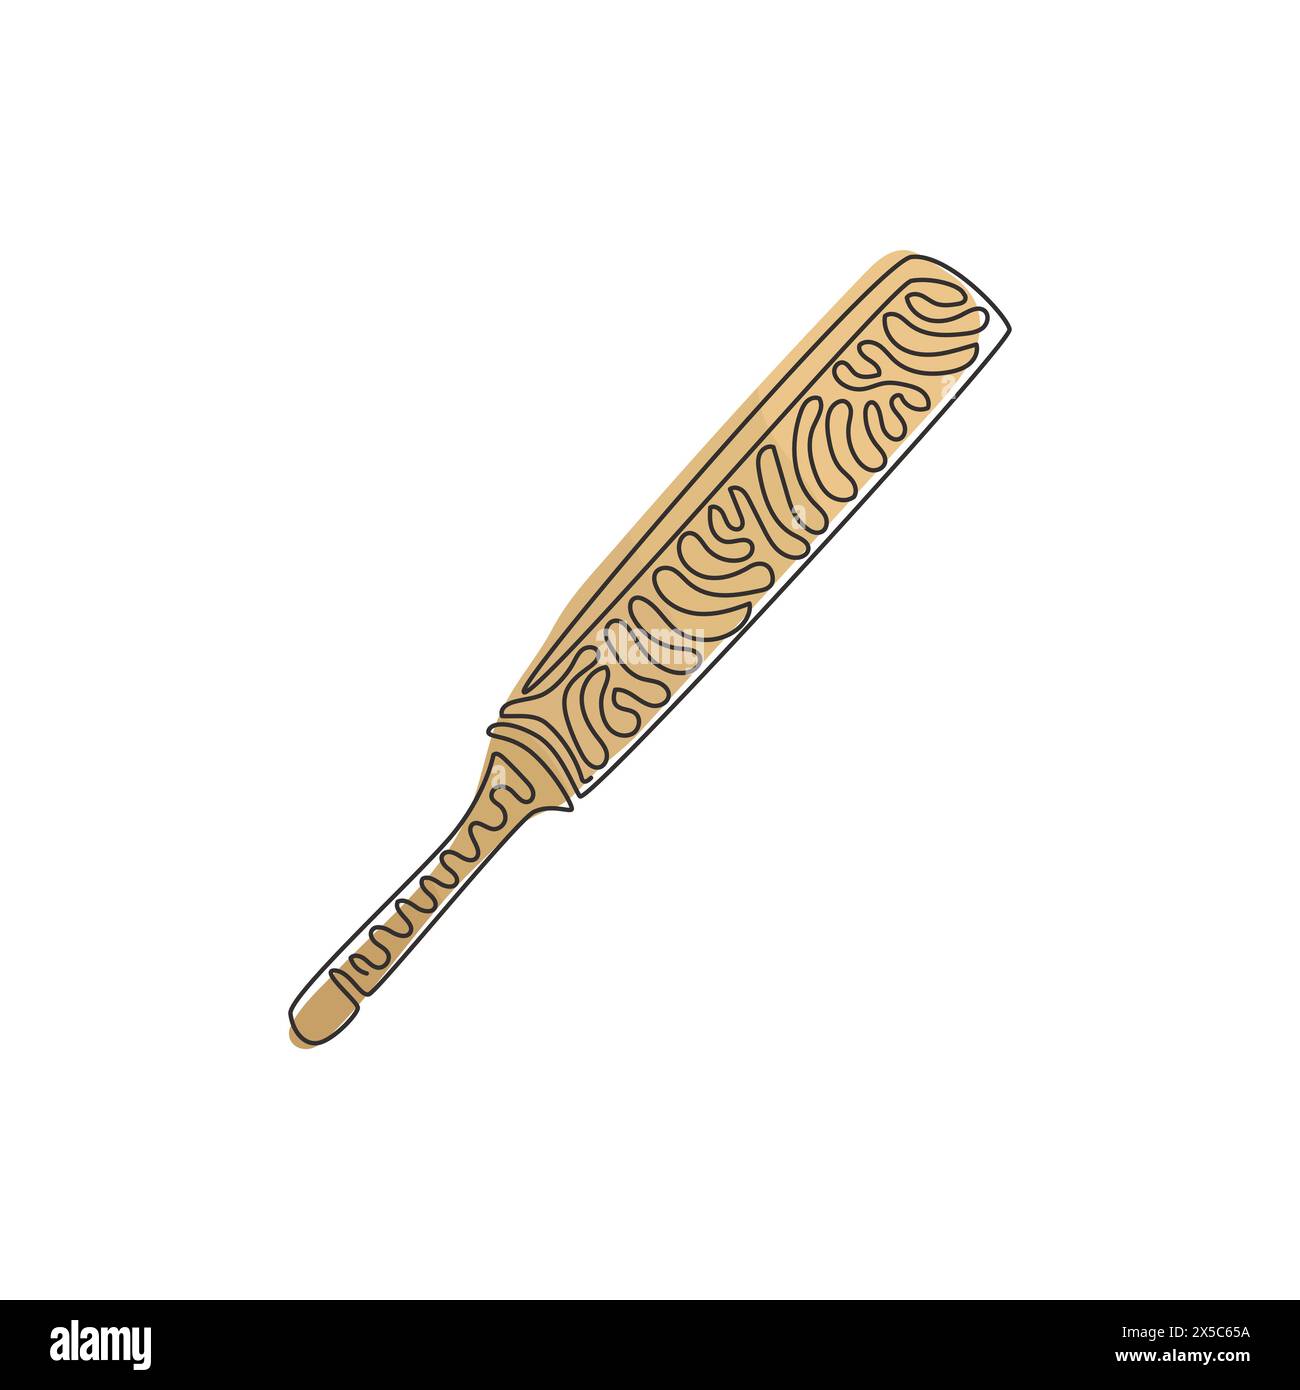 Linea singola continua che disegna i tradizionali pipistrelli da cricket in legno. Mazza di legno, gioco di cricket, attrezzatura sportiva per cricket. Sport all'aperto. Arriccia i capelli. Illustrazione Vettoriale